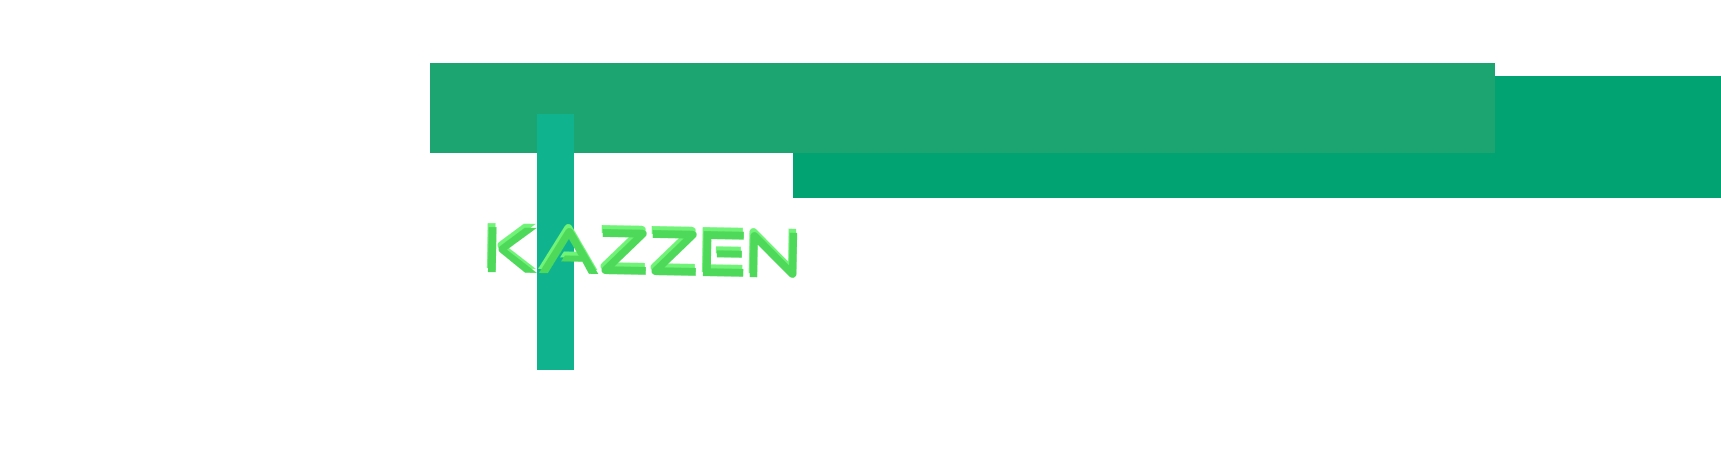 logo Kazzen